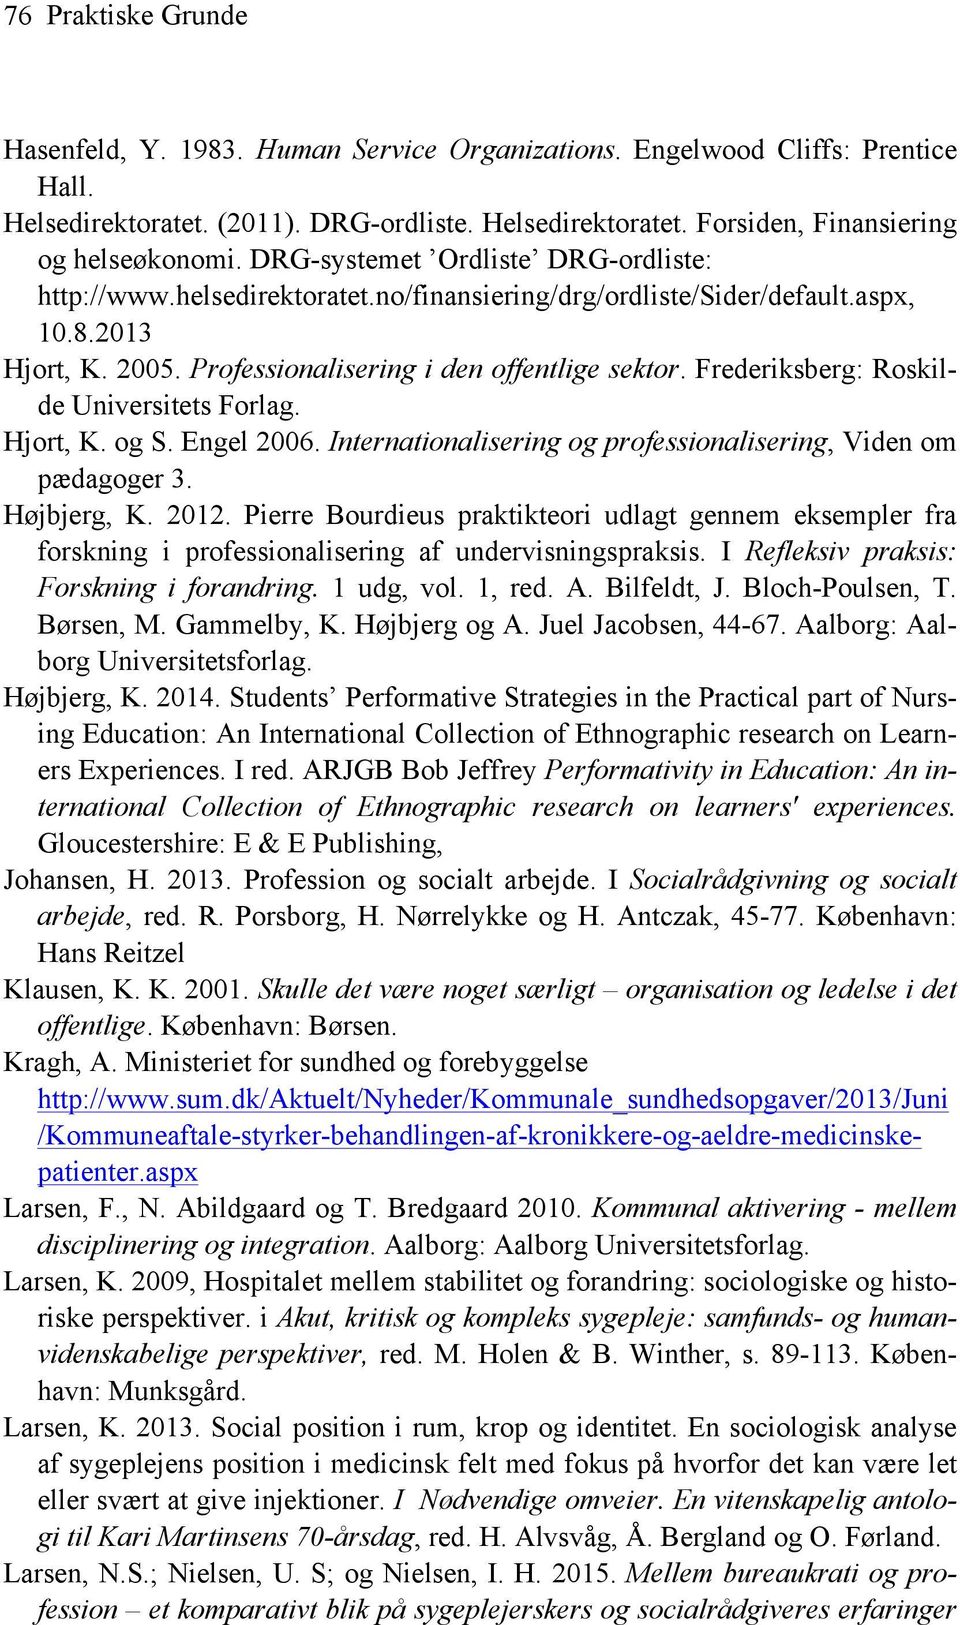 Frederiksberg: Roskilde Universitets Forlag. Hjort, K. og S. Engel 2006. Internationalisering og professionalisering, Viden om pædagoger 3. Højbjerg, K. 2012.